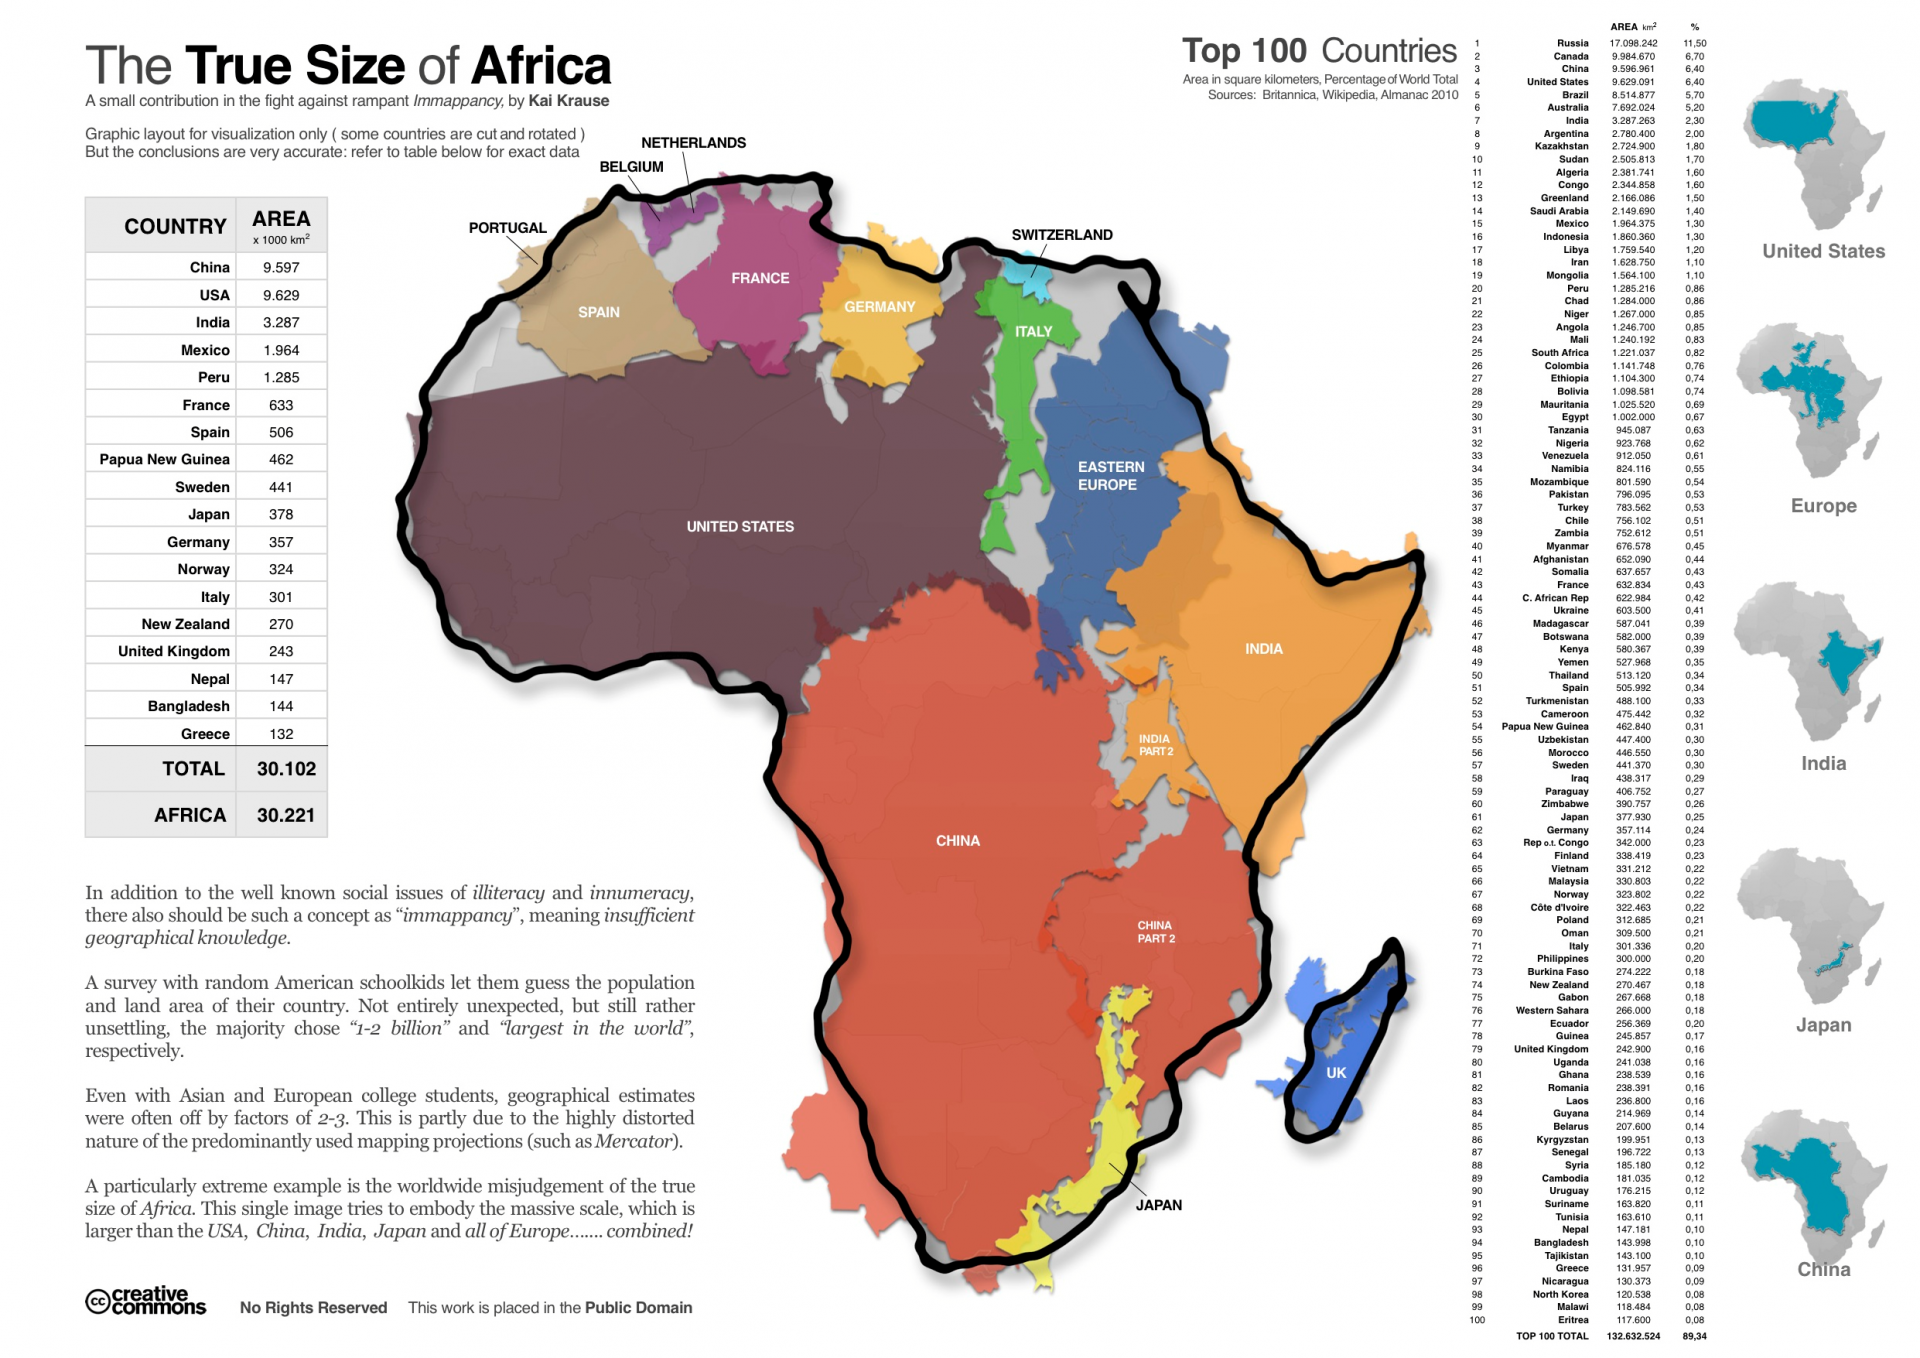 Karte der wirklichen Größe Afrikas, erstellt von Kai Kause.